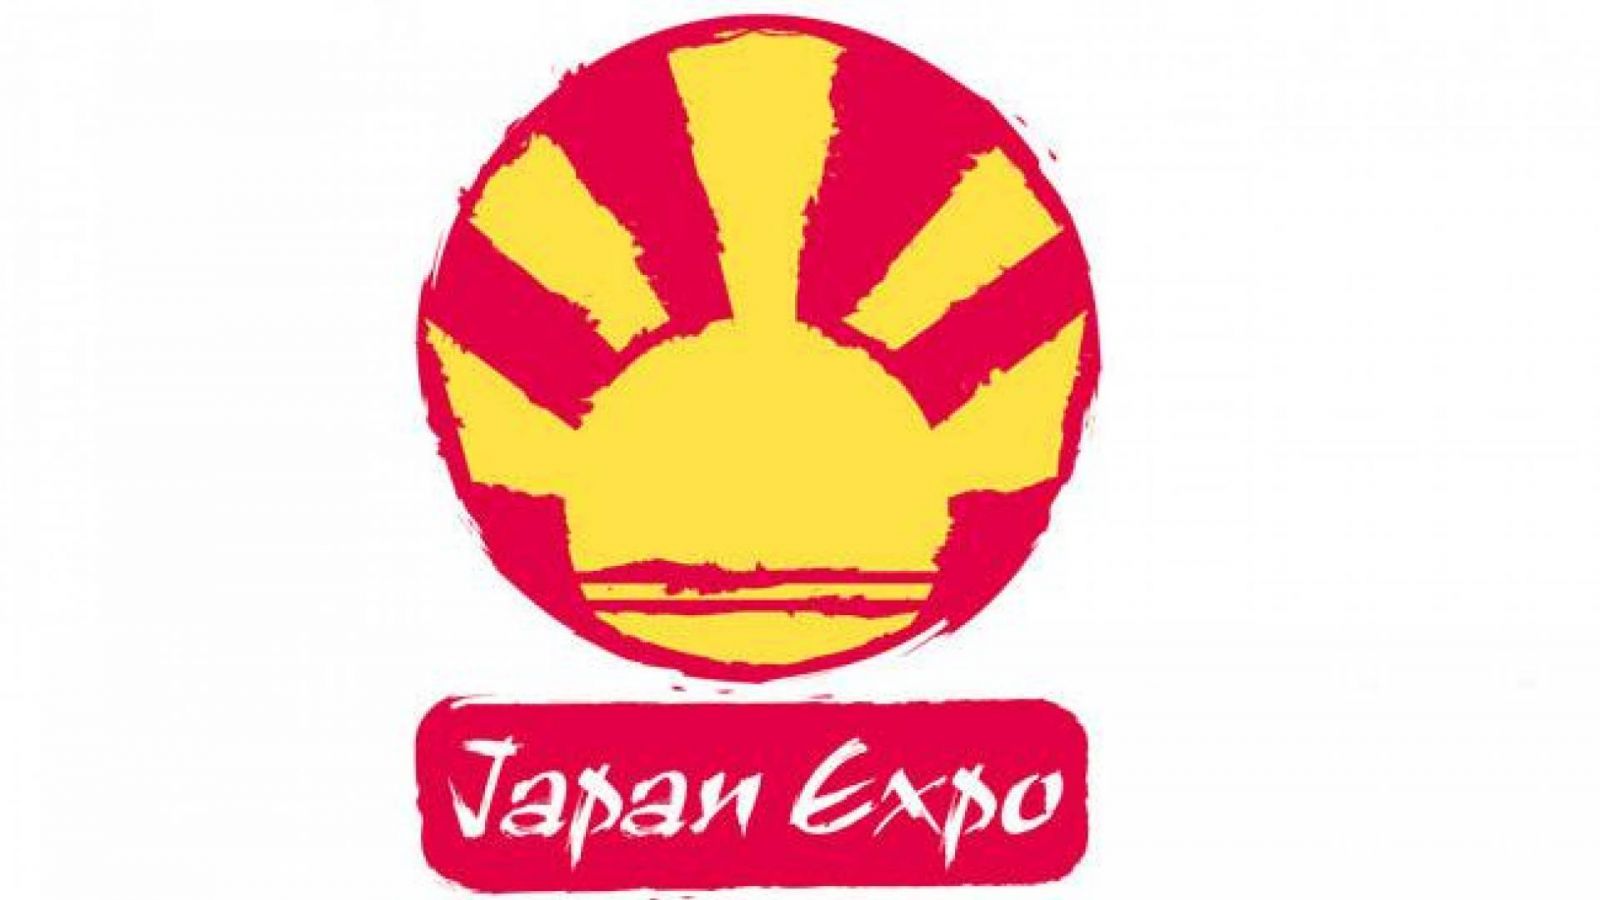 Japan Expo 2013 : Demandez le programme! © Japan Expo